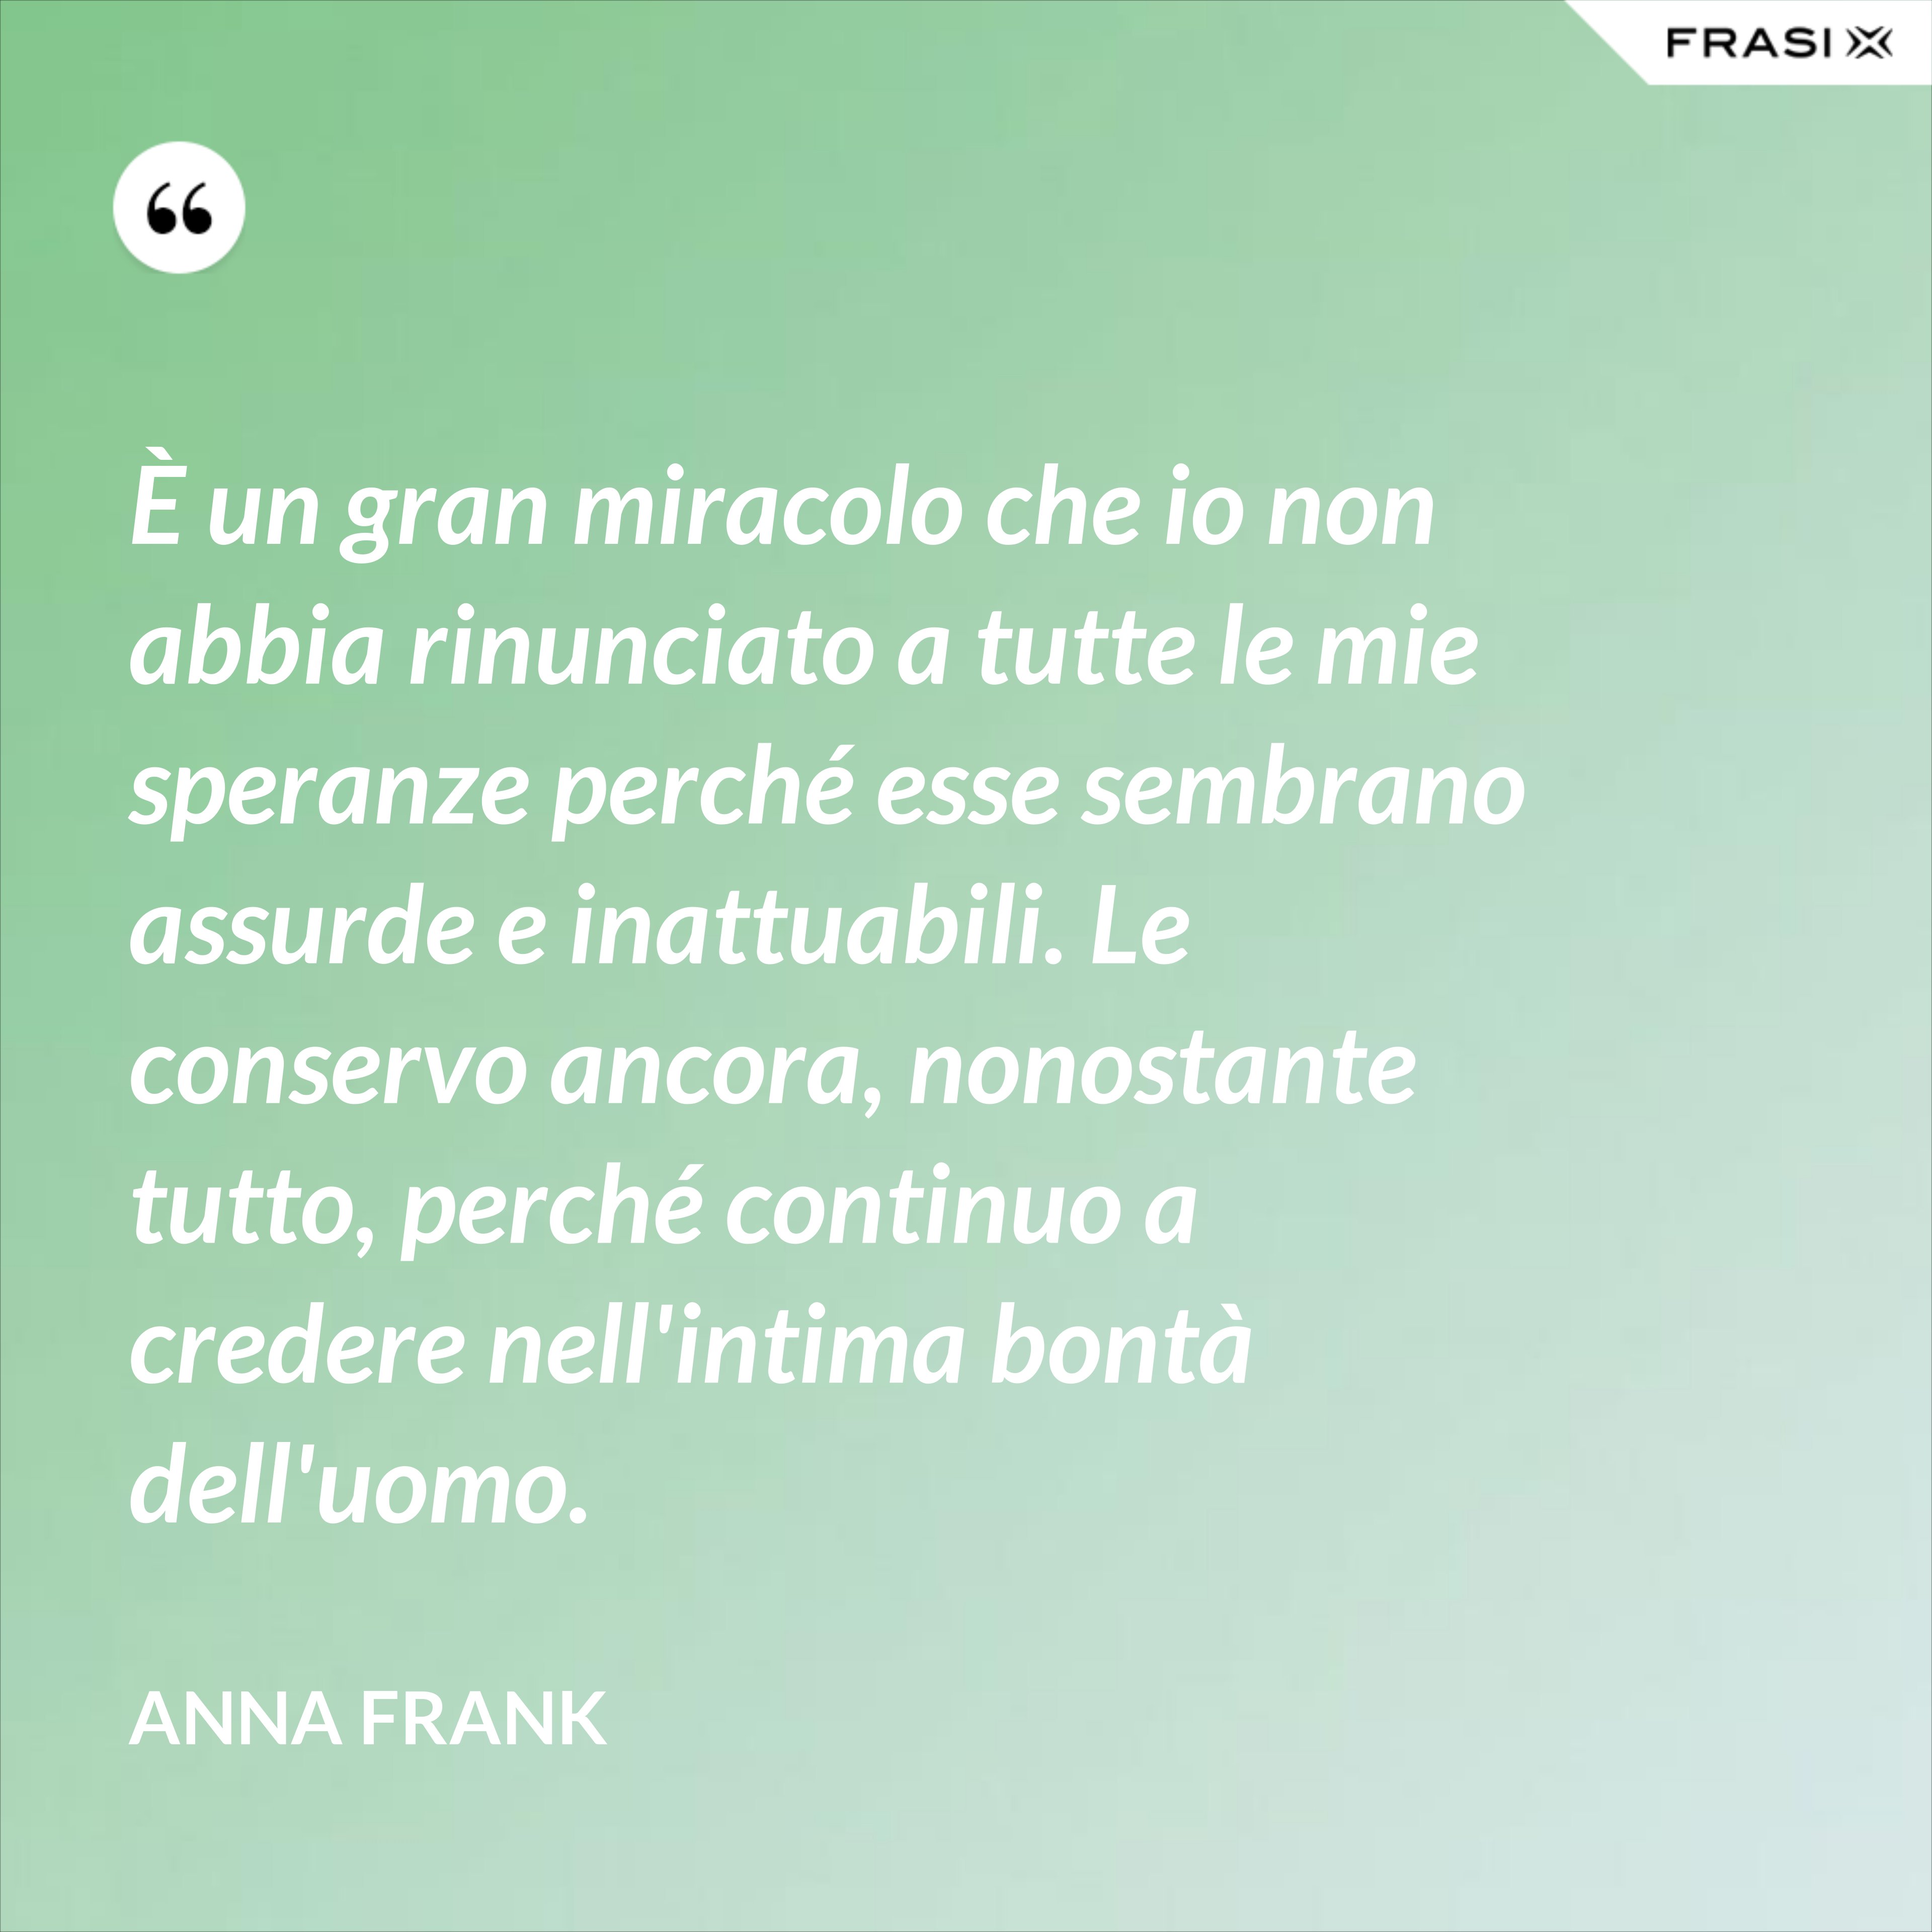 È un gran miracolo che io non abbia rinunciato a tutte le mie speranze perché esse sembrano assurde e inattuabili. Le conservo ancora, nonostante tutto, perché continuo a credere nell'intima bontà dell'uomo. - Anna Frank